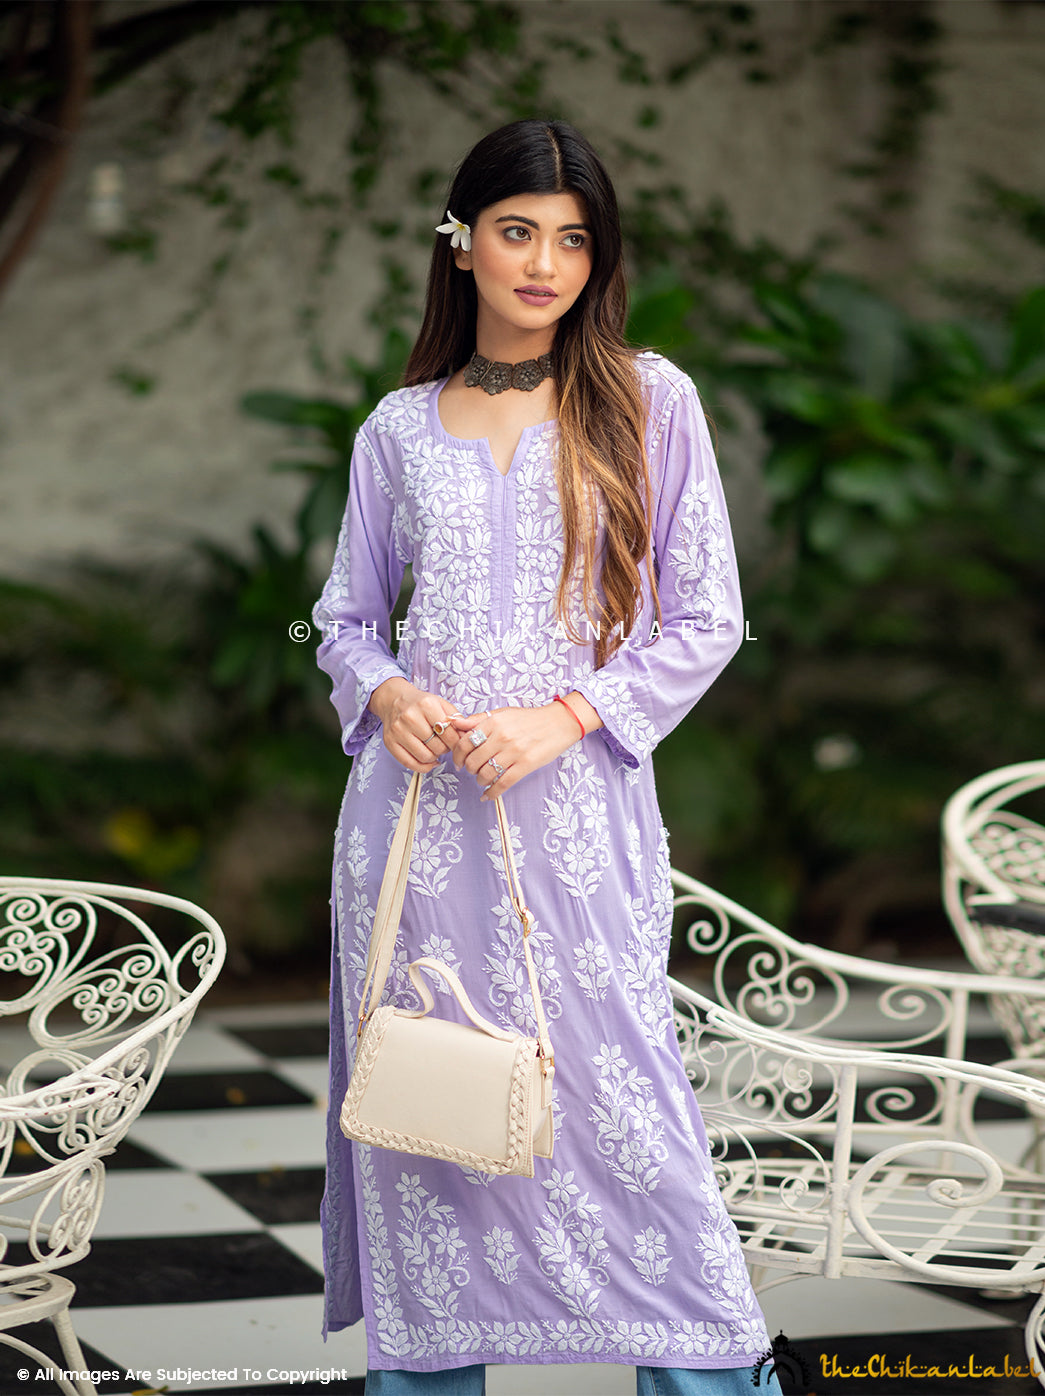 Lavender Eira Modal Chikankari Straight Kurti ,Chikankari Straight Kurti in Modal Fabric For Woman